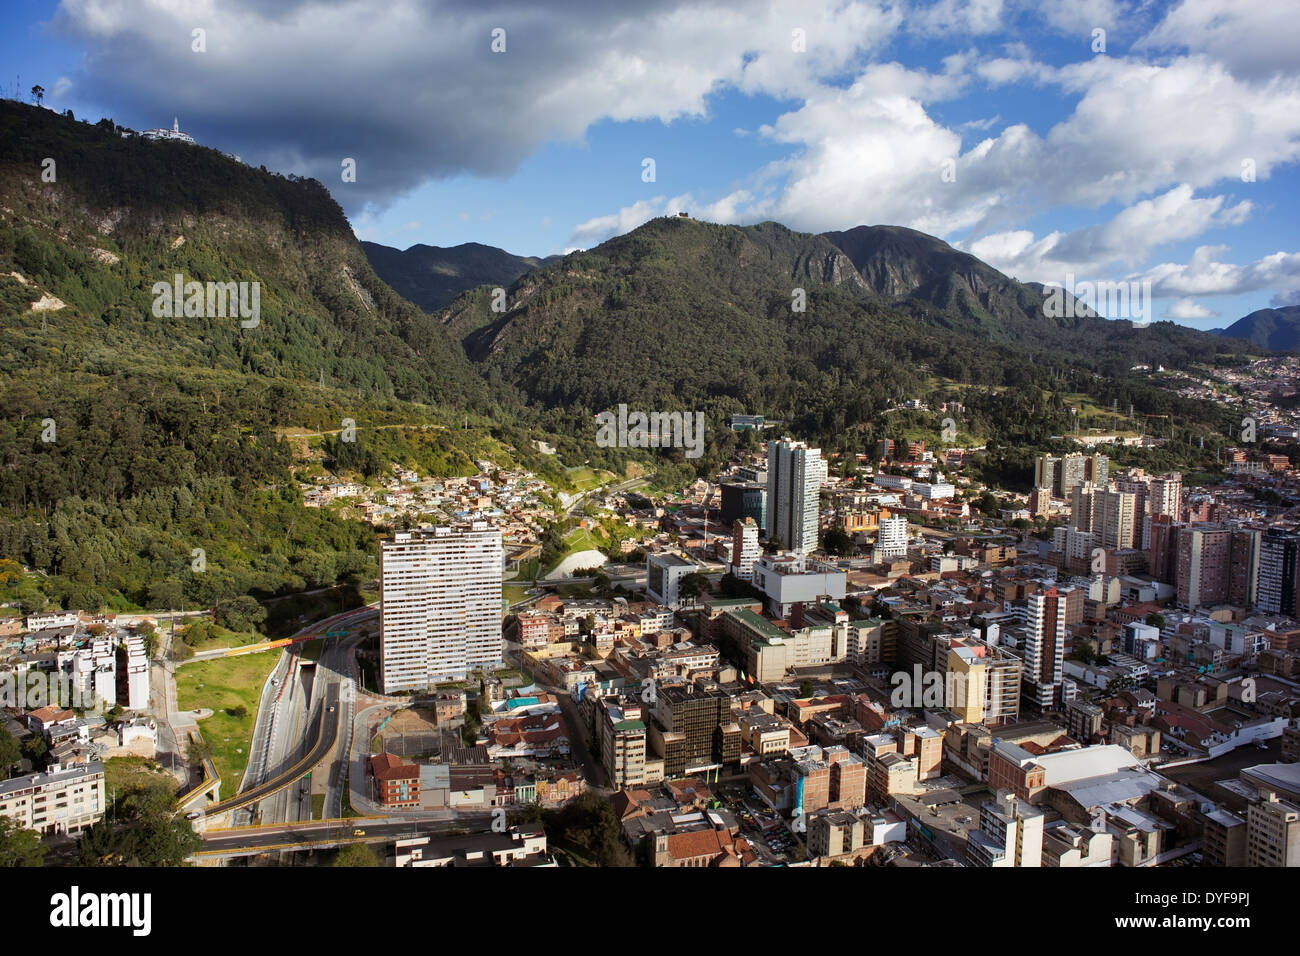 Vista panoramica della città di Bogotá, la capitale della Colombia. Vista aerea del centro di Bogotà e la montagna Monserrate (chiesa) Foto Stock